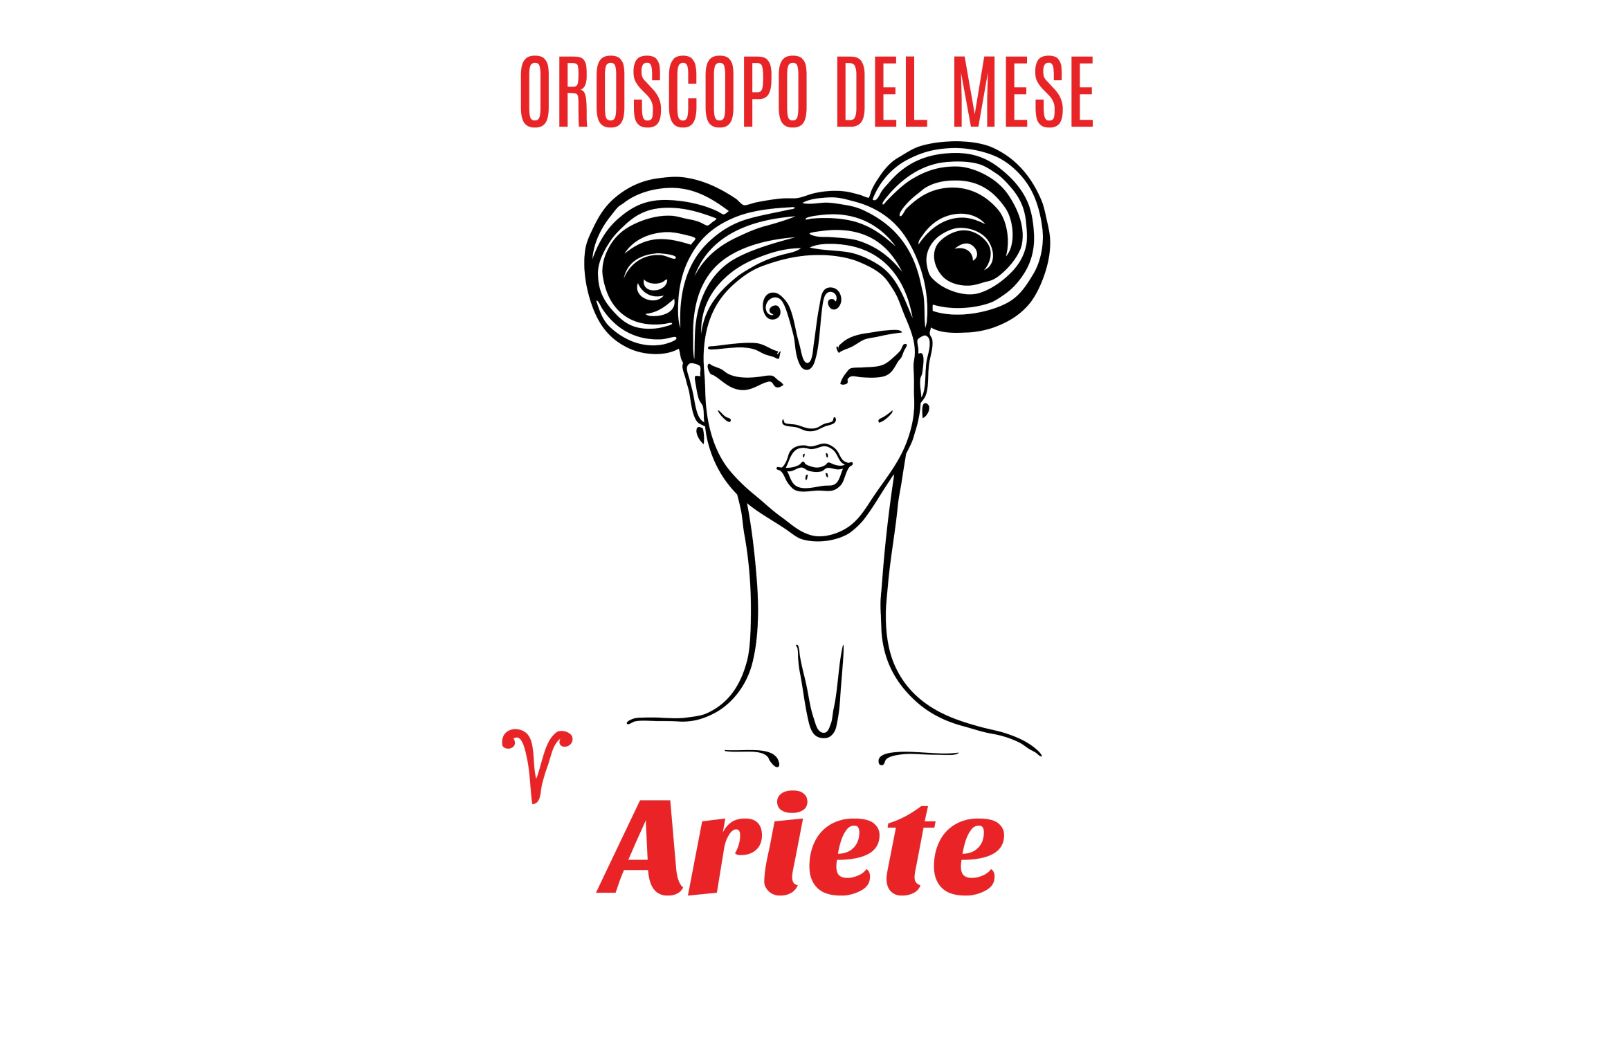 Oroscopo del mese: Ariete - maggio 2019